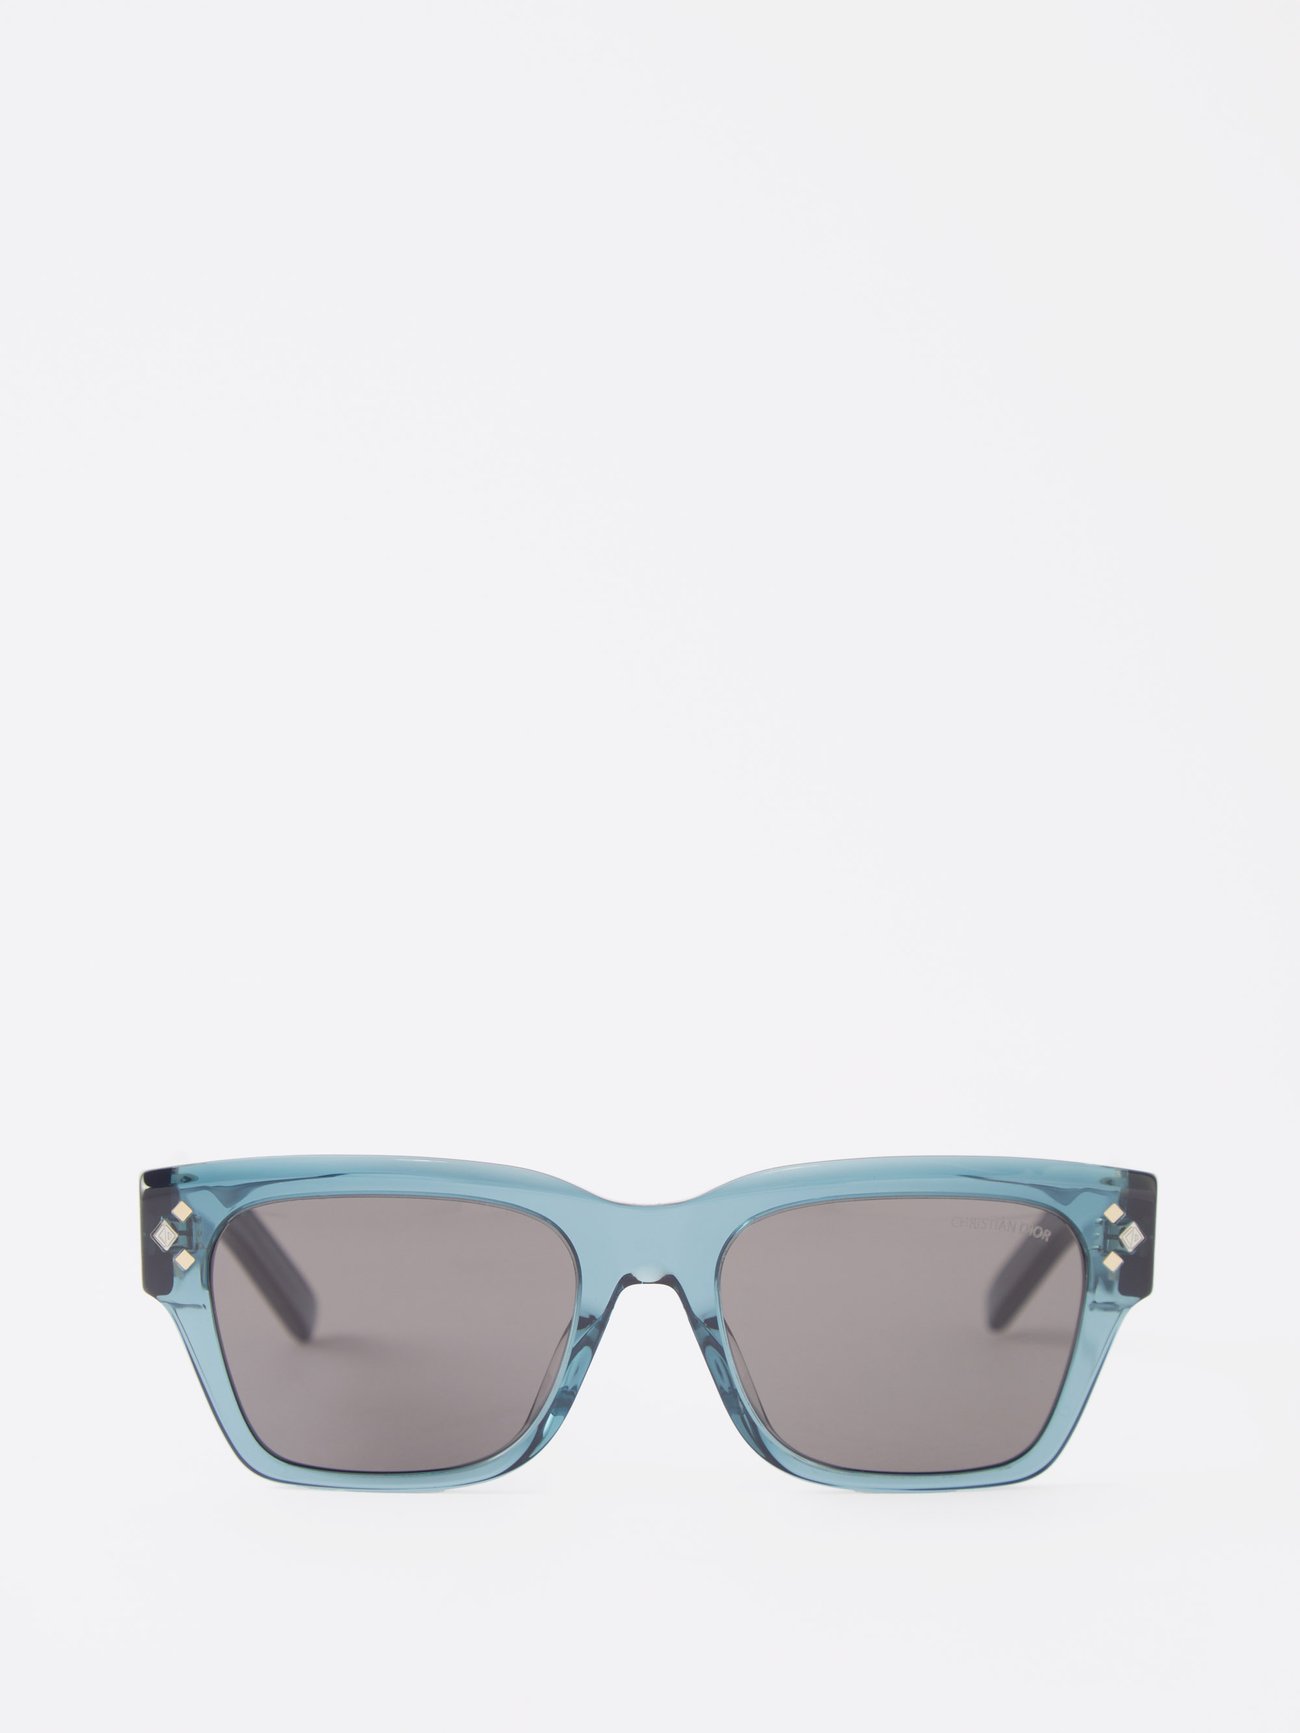 Blue CD Diamond S2I D-frame acetate sunglasses, DIOR